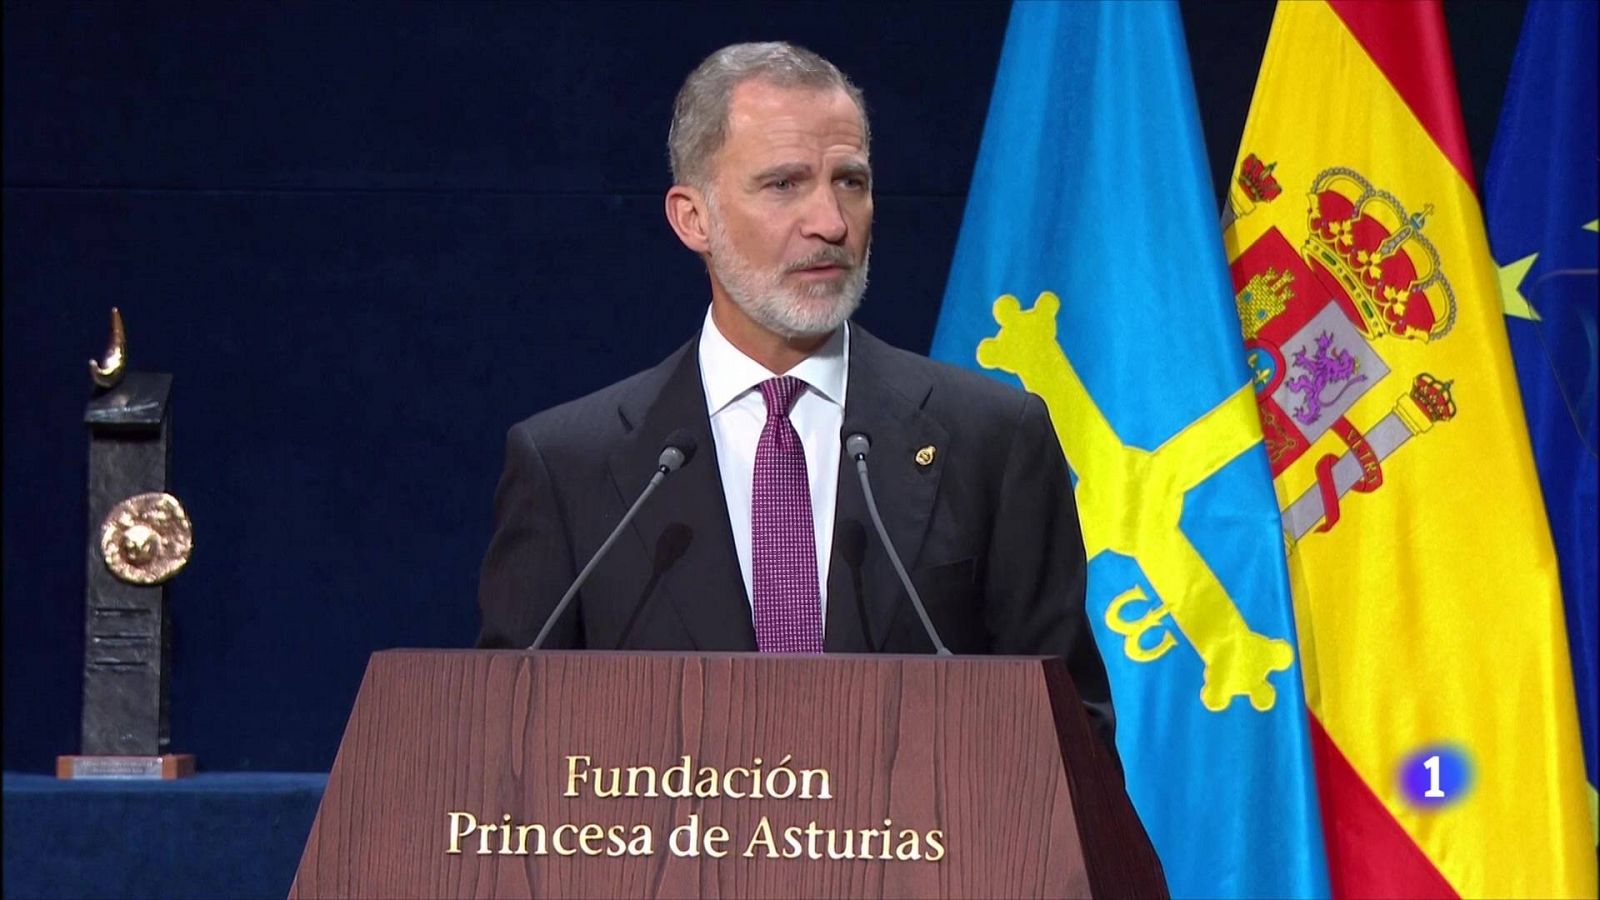 El rey, en la entrega de los Premios Princesa de Asturias: "Las soluciones llegarán de la unidad, nunca de la división"